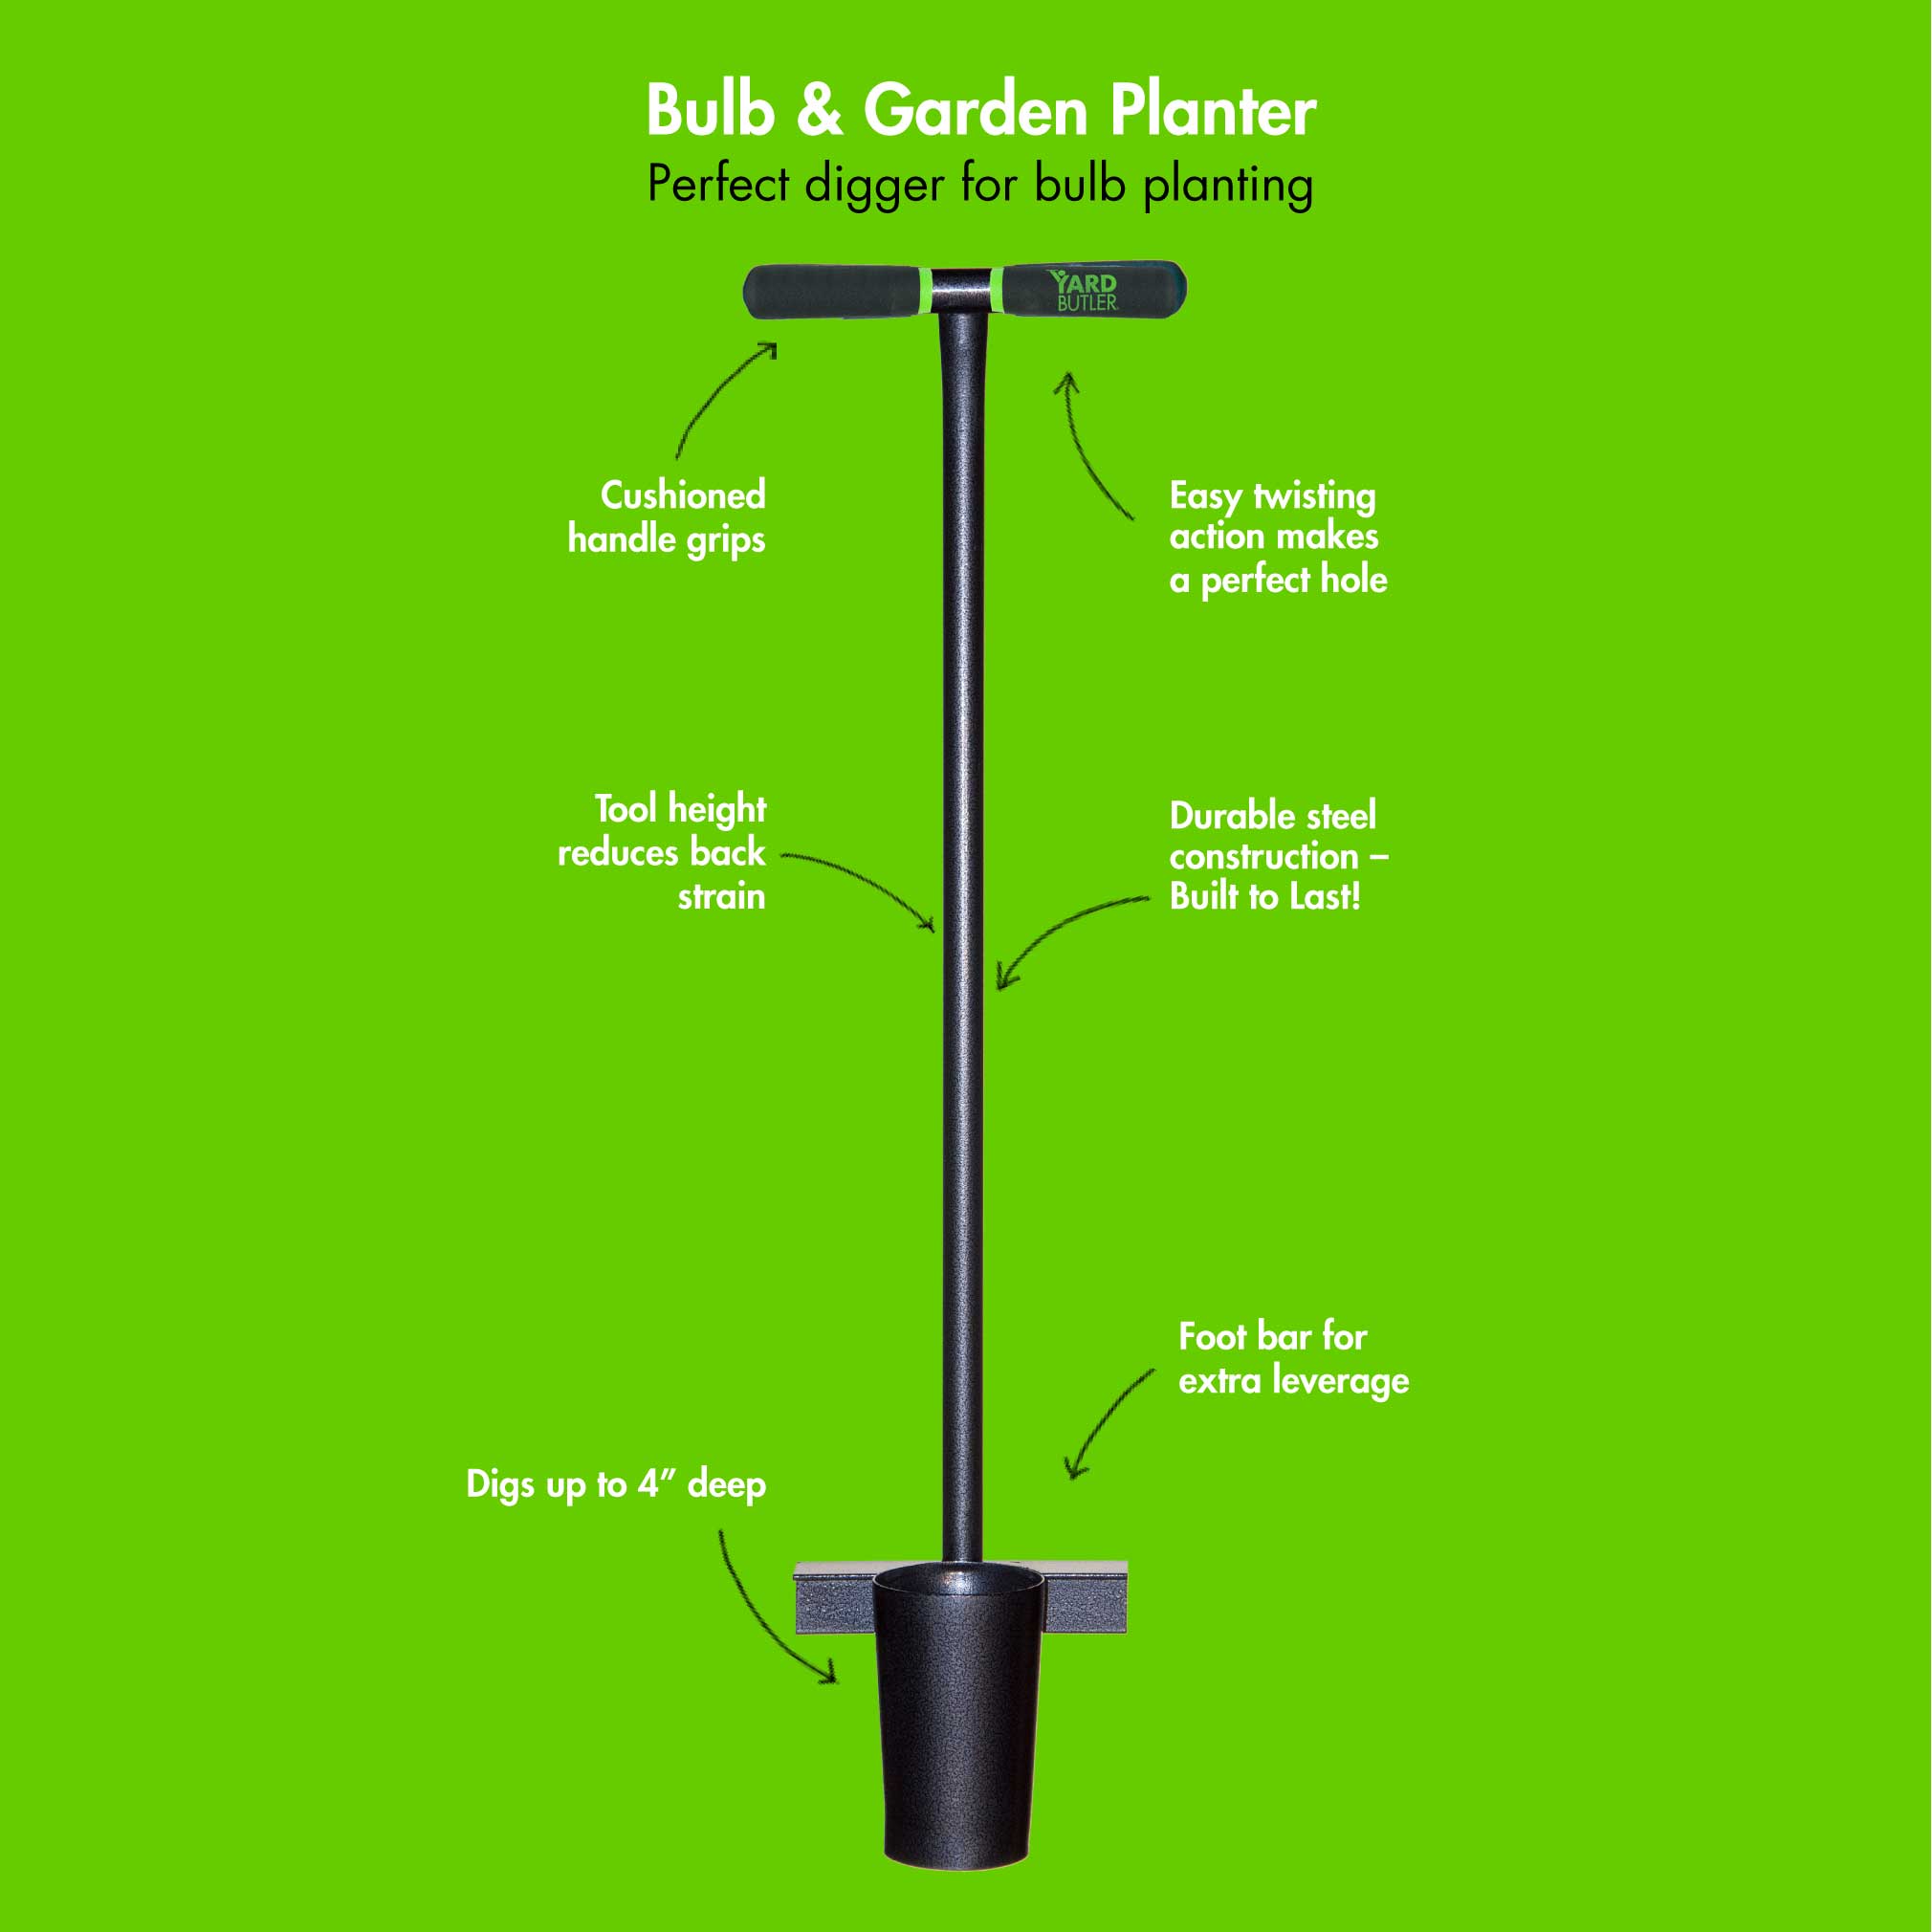 Bulb & Garden Planter